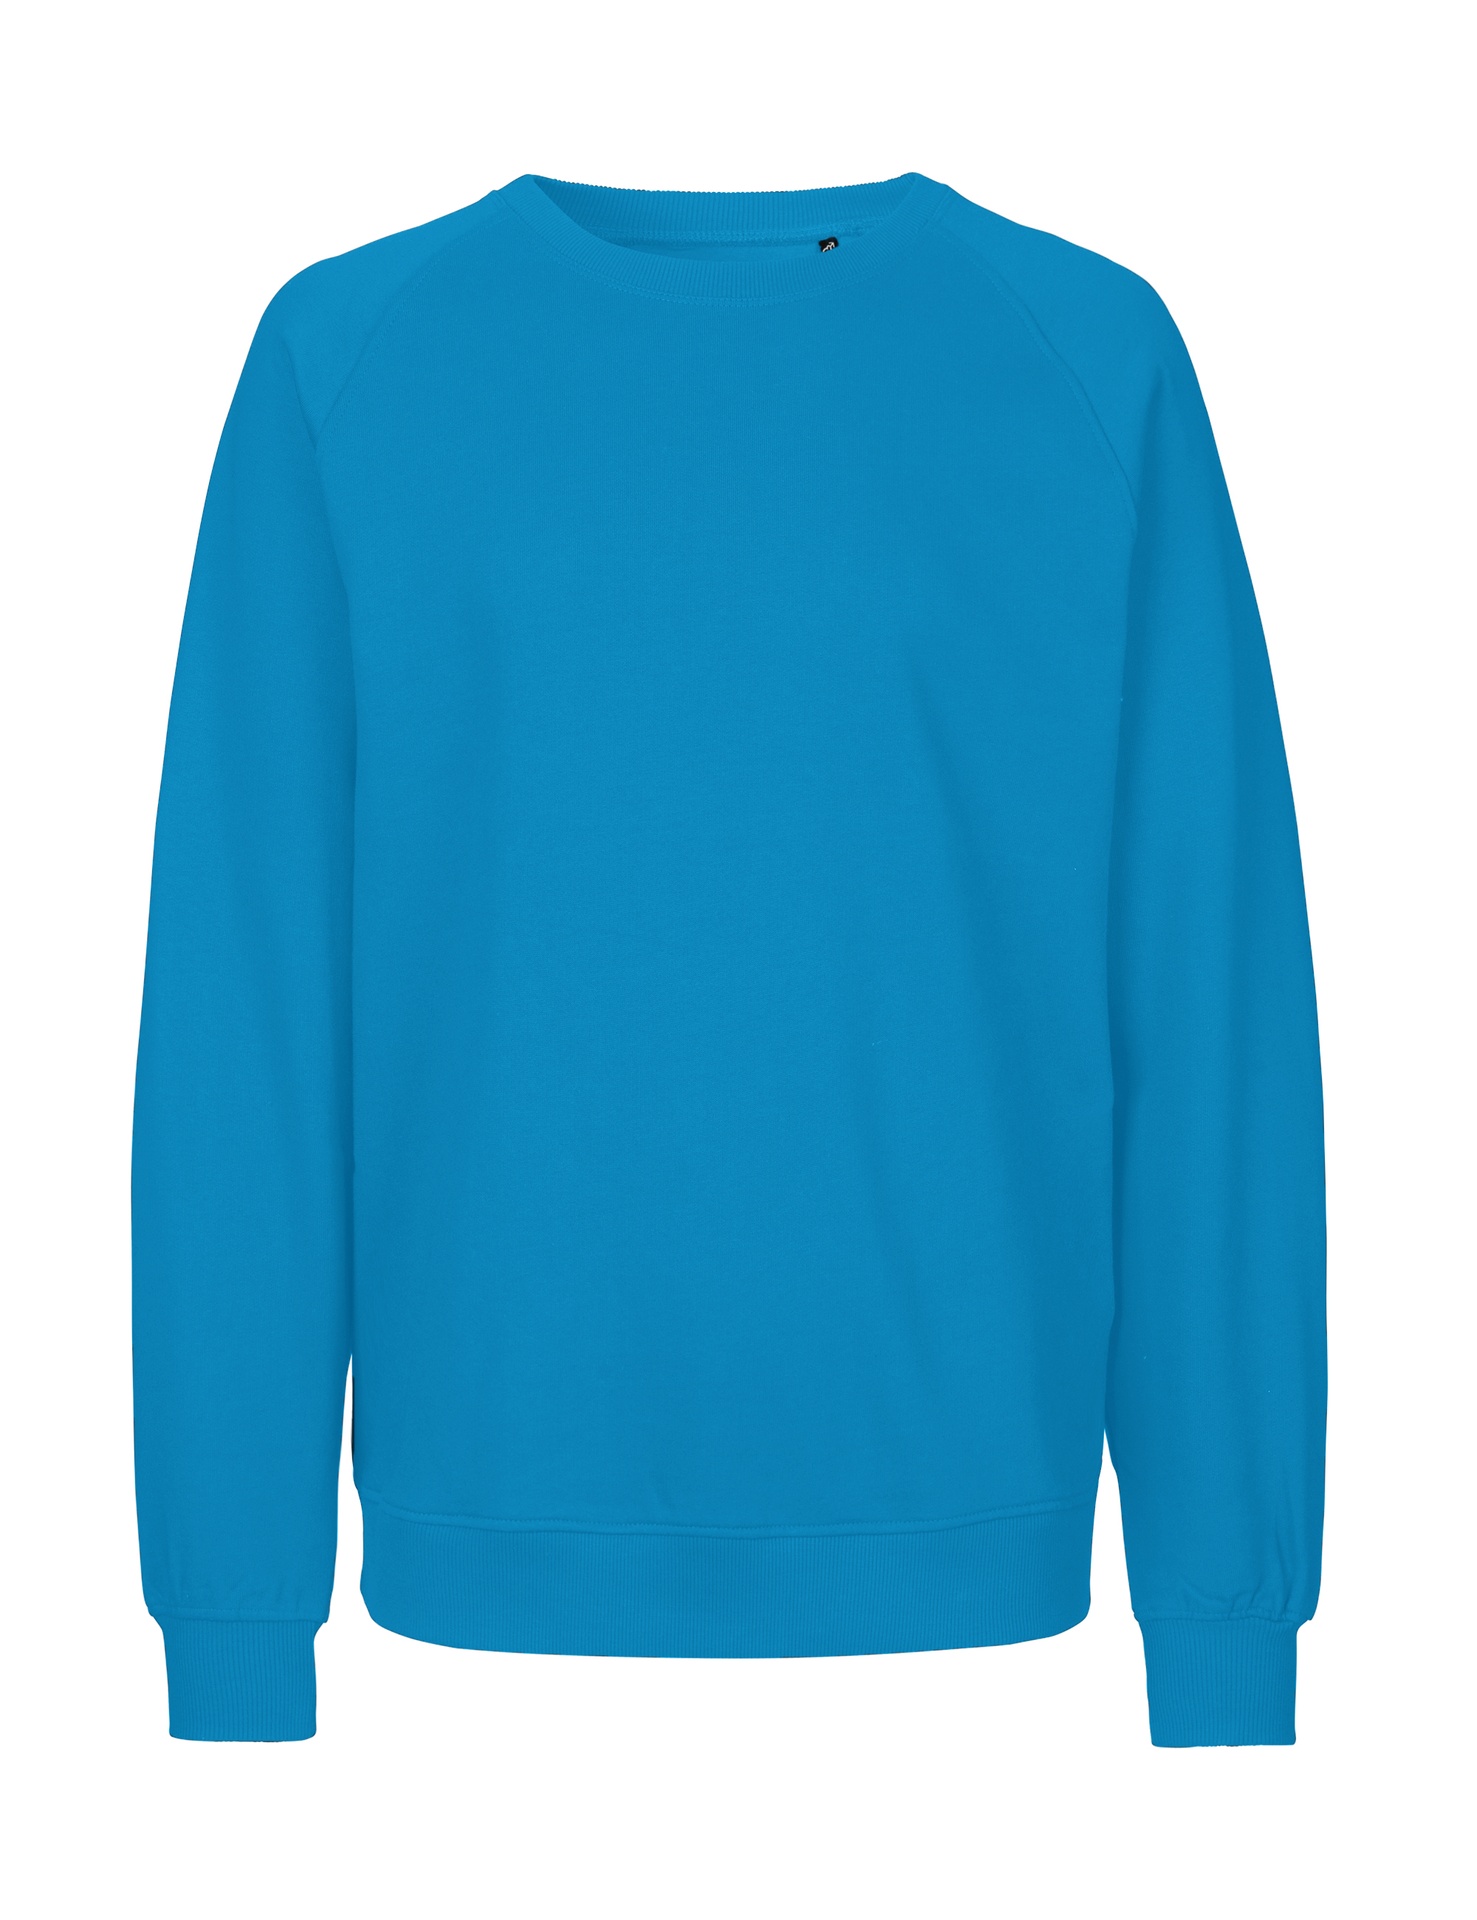 [PR/02774] Unisex Sweatshirt (Sapphire 27, 2XL)